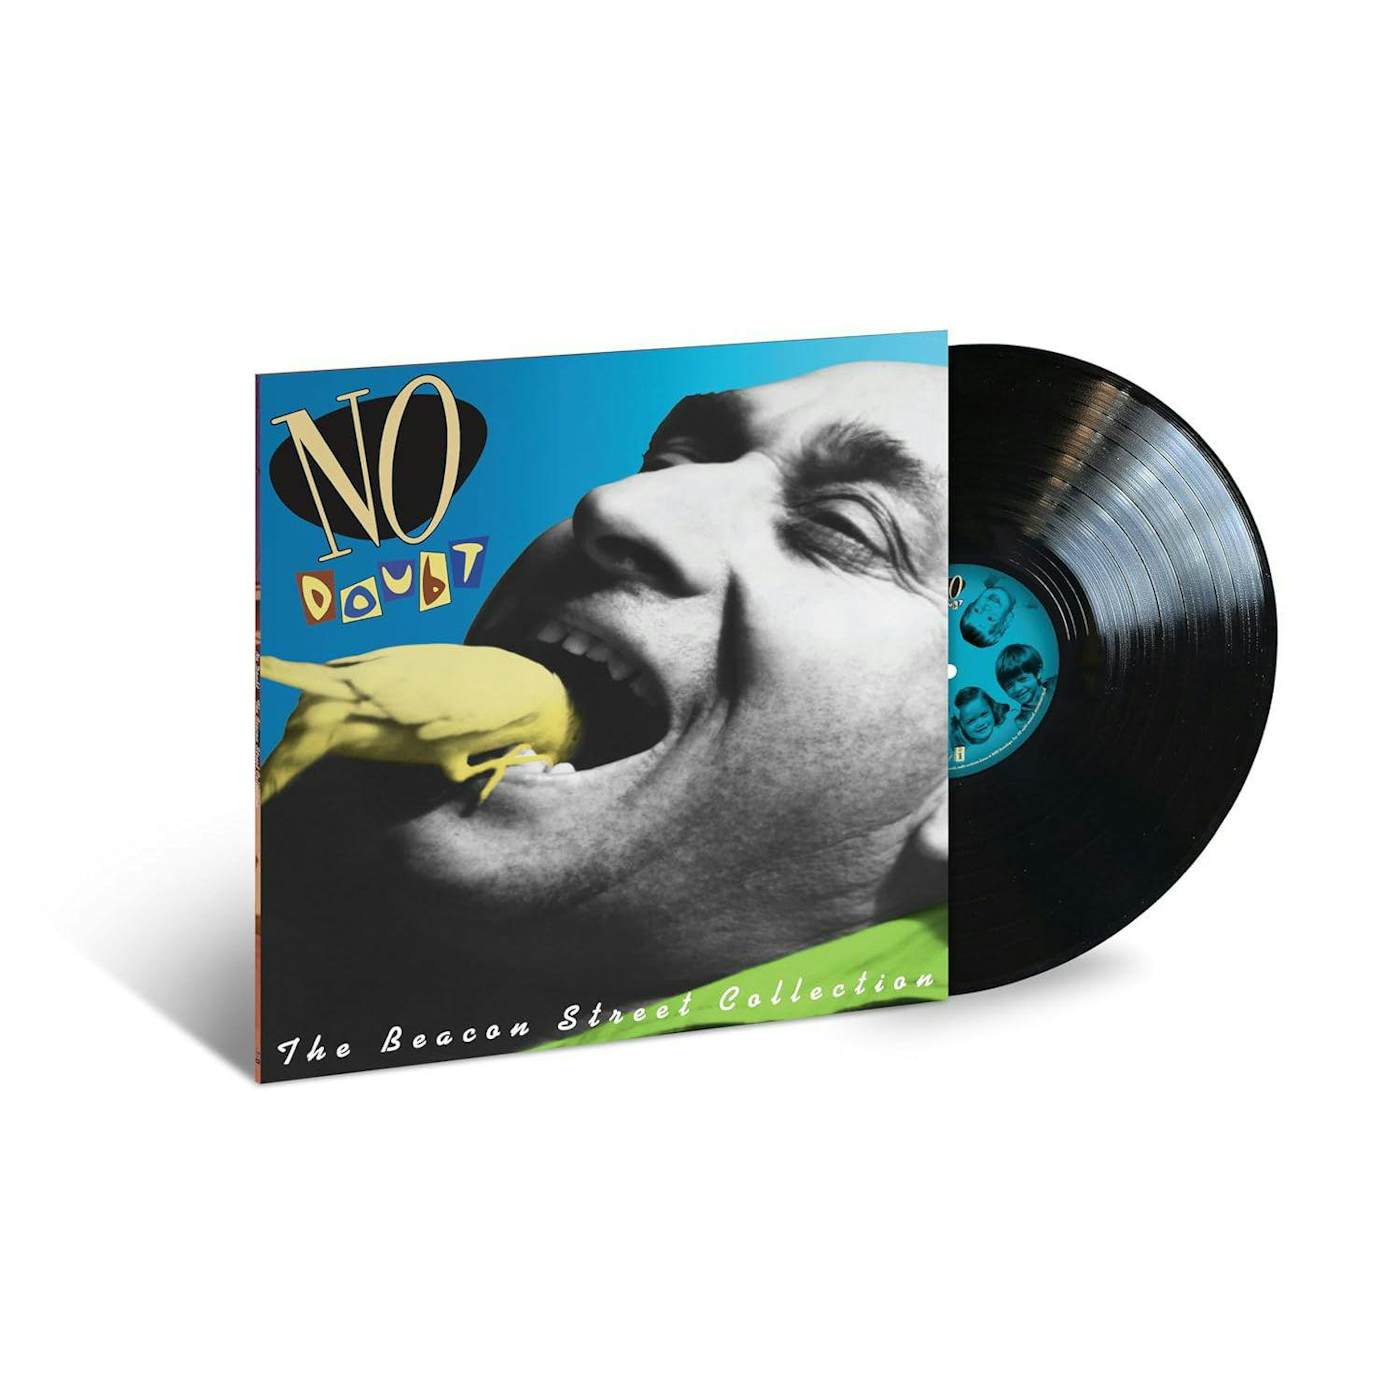 No Doubt Beacon Street Collection (180G) Vinyl Record